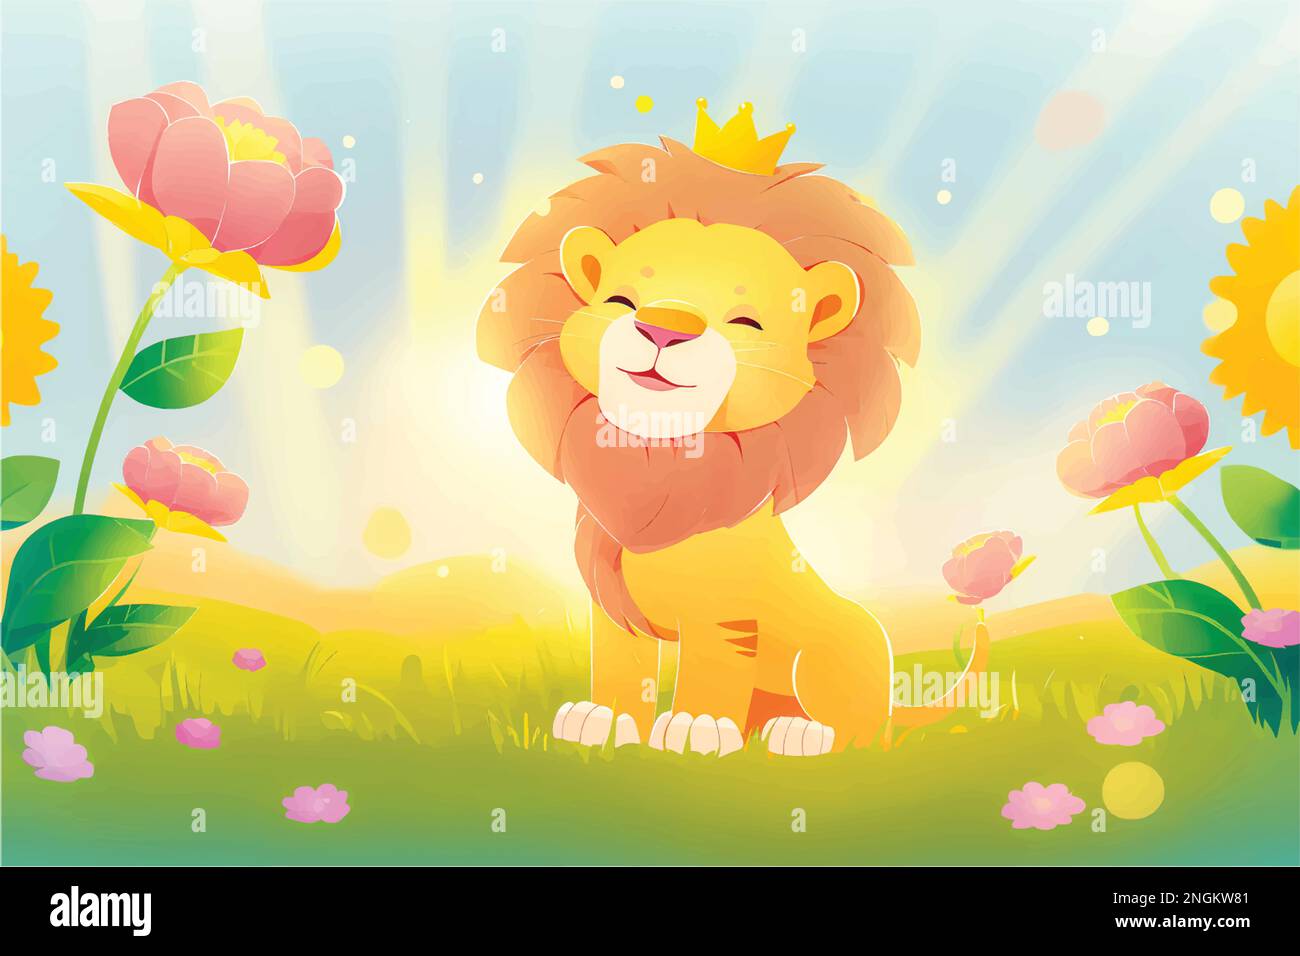 Questa giocosa illustrazione di un leone amichevole con una priorità bassa della natura è perfetta per i capretti Illustrazione Vettoriale